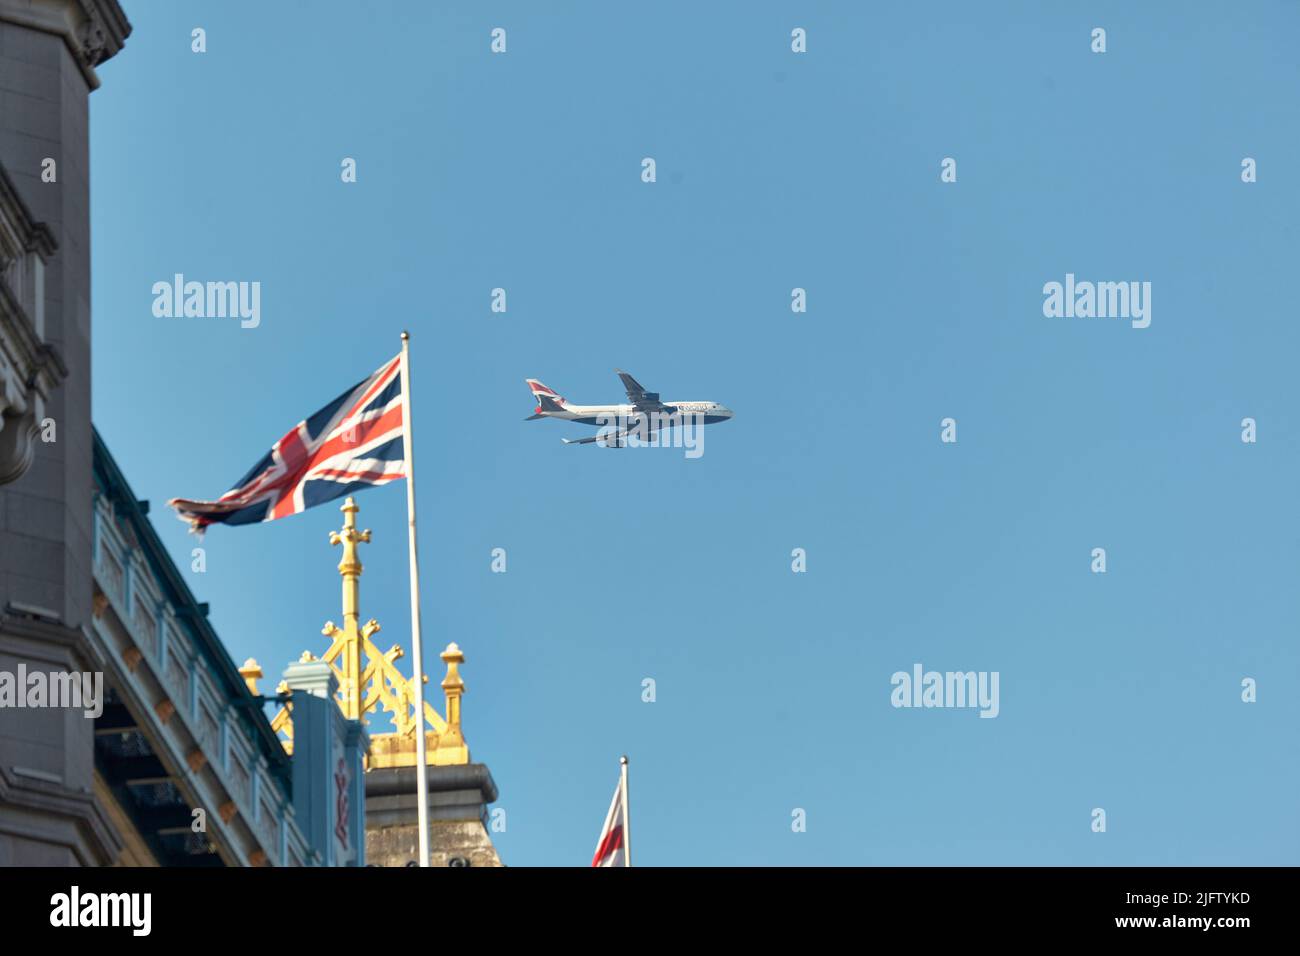 British Airways plane flying over Tower Bridge, London, UK. Stock Photo